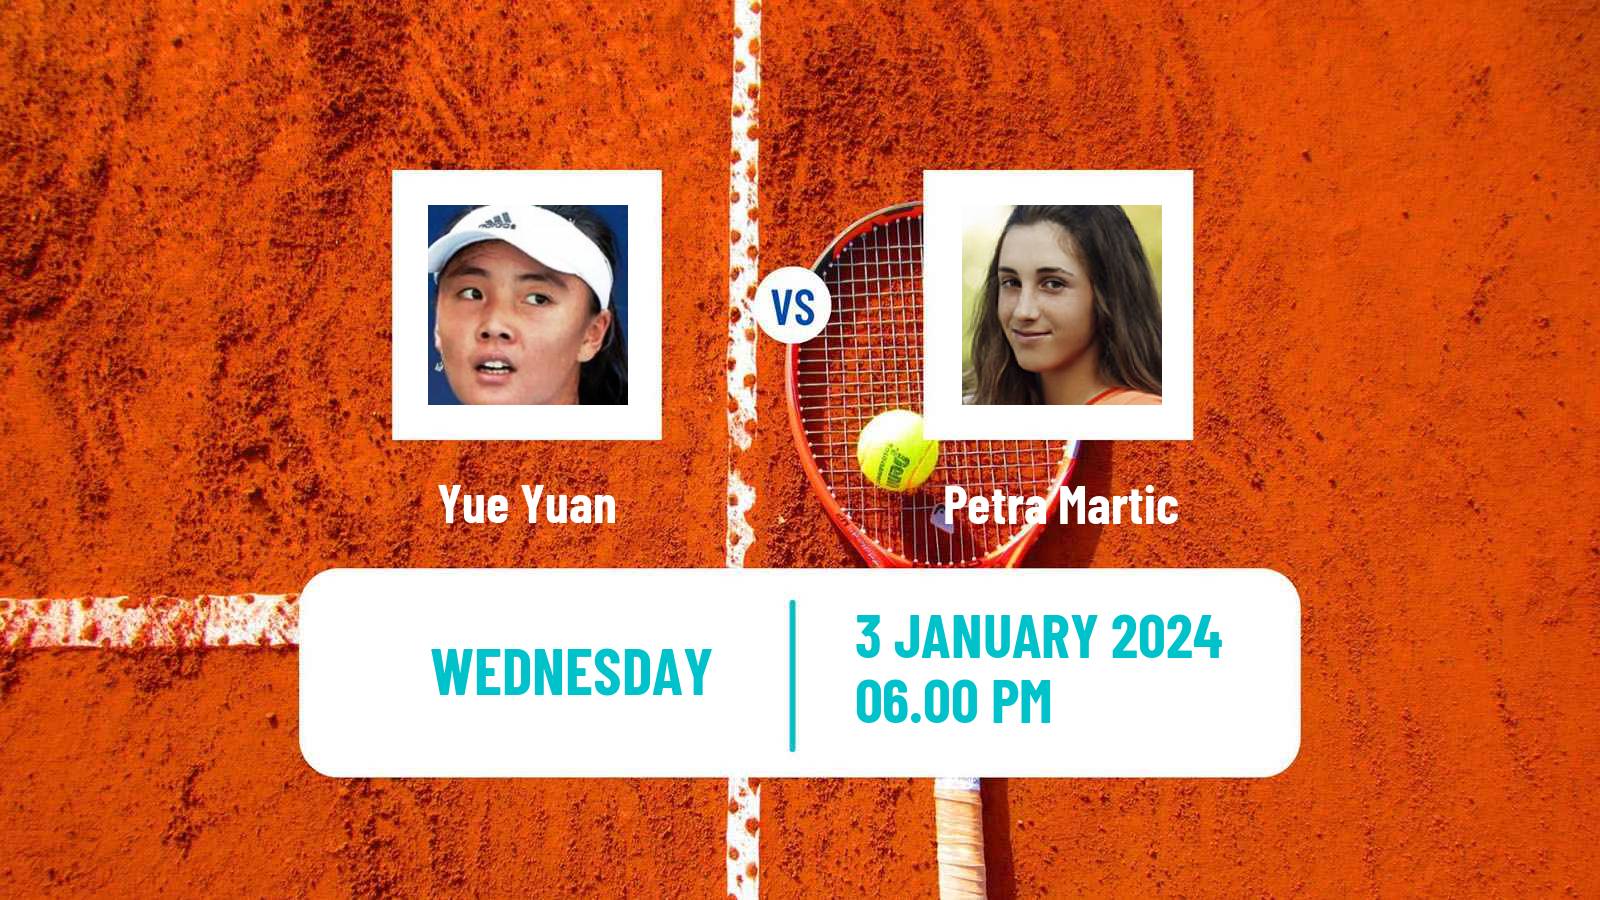 Tennis WTA Auckland Yue Yuan - Petra Martic